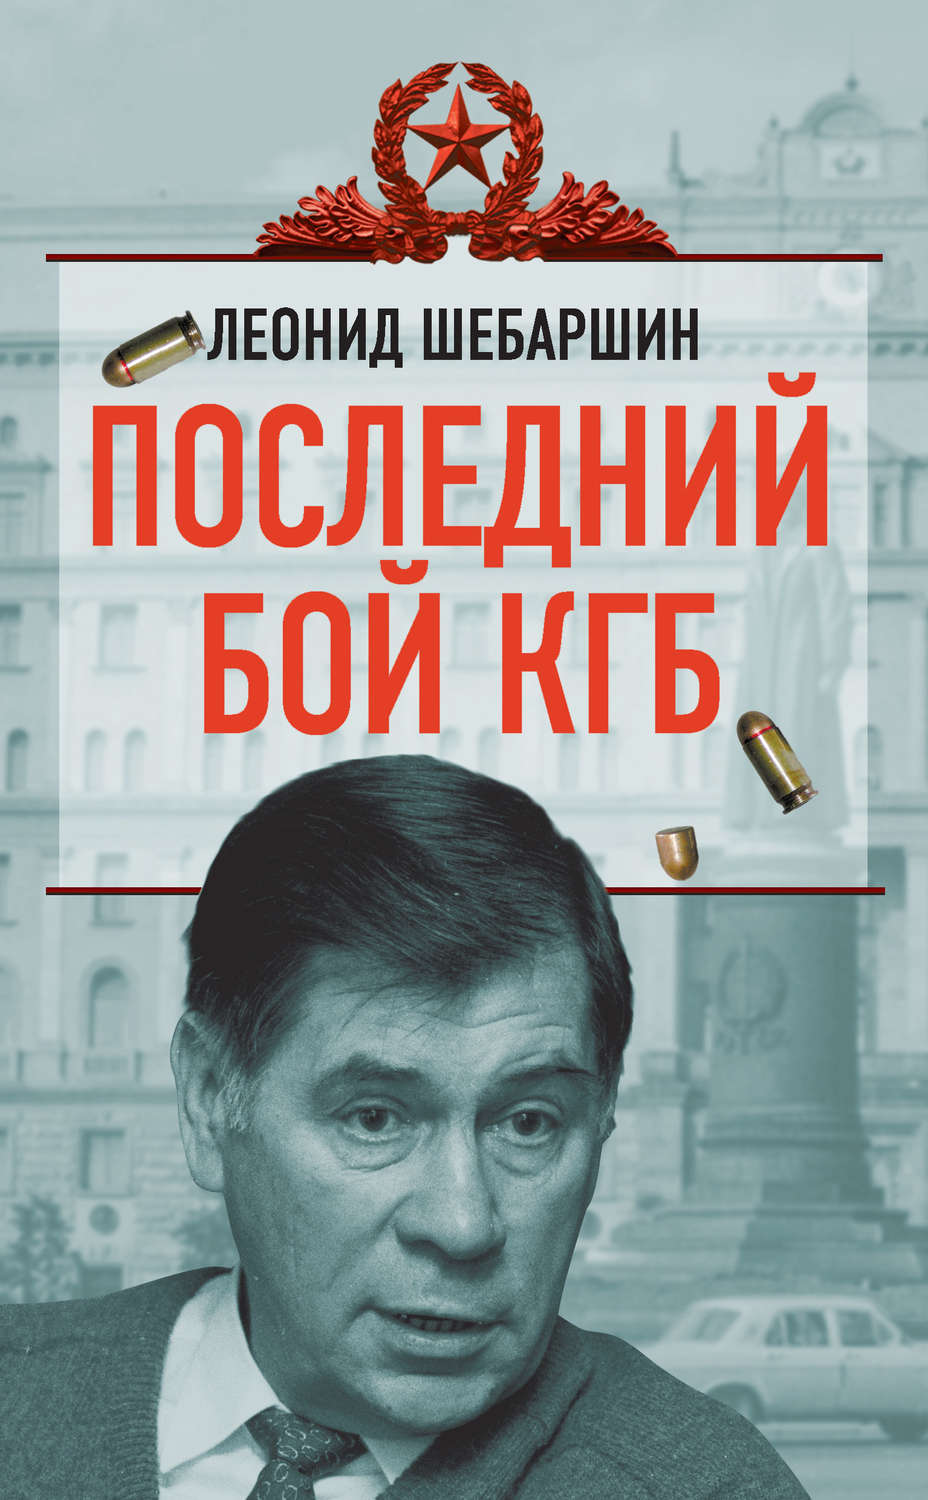 Геннадий соколов книги скачать бесплатно